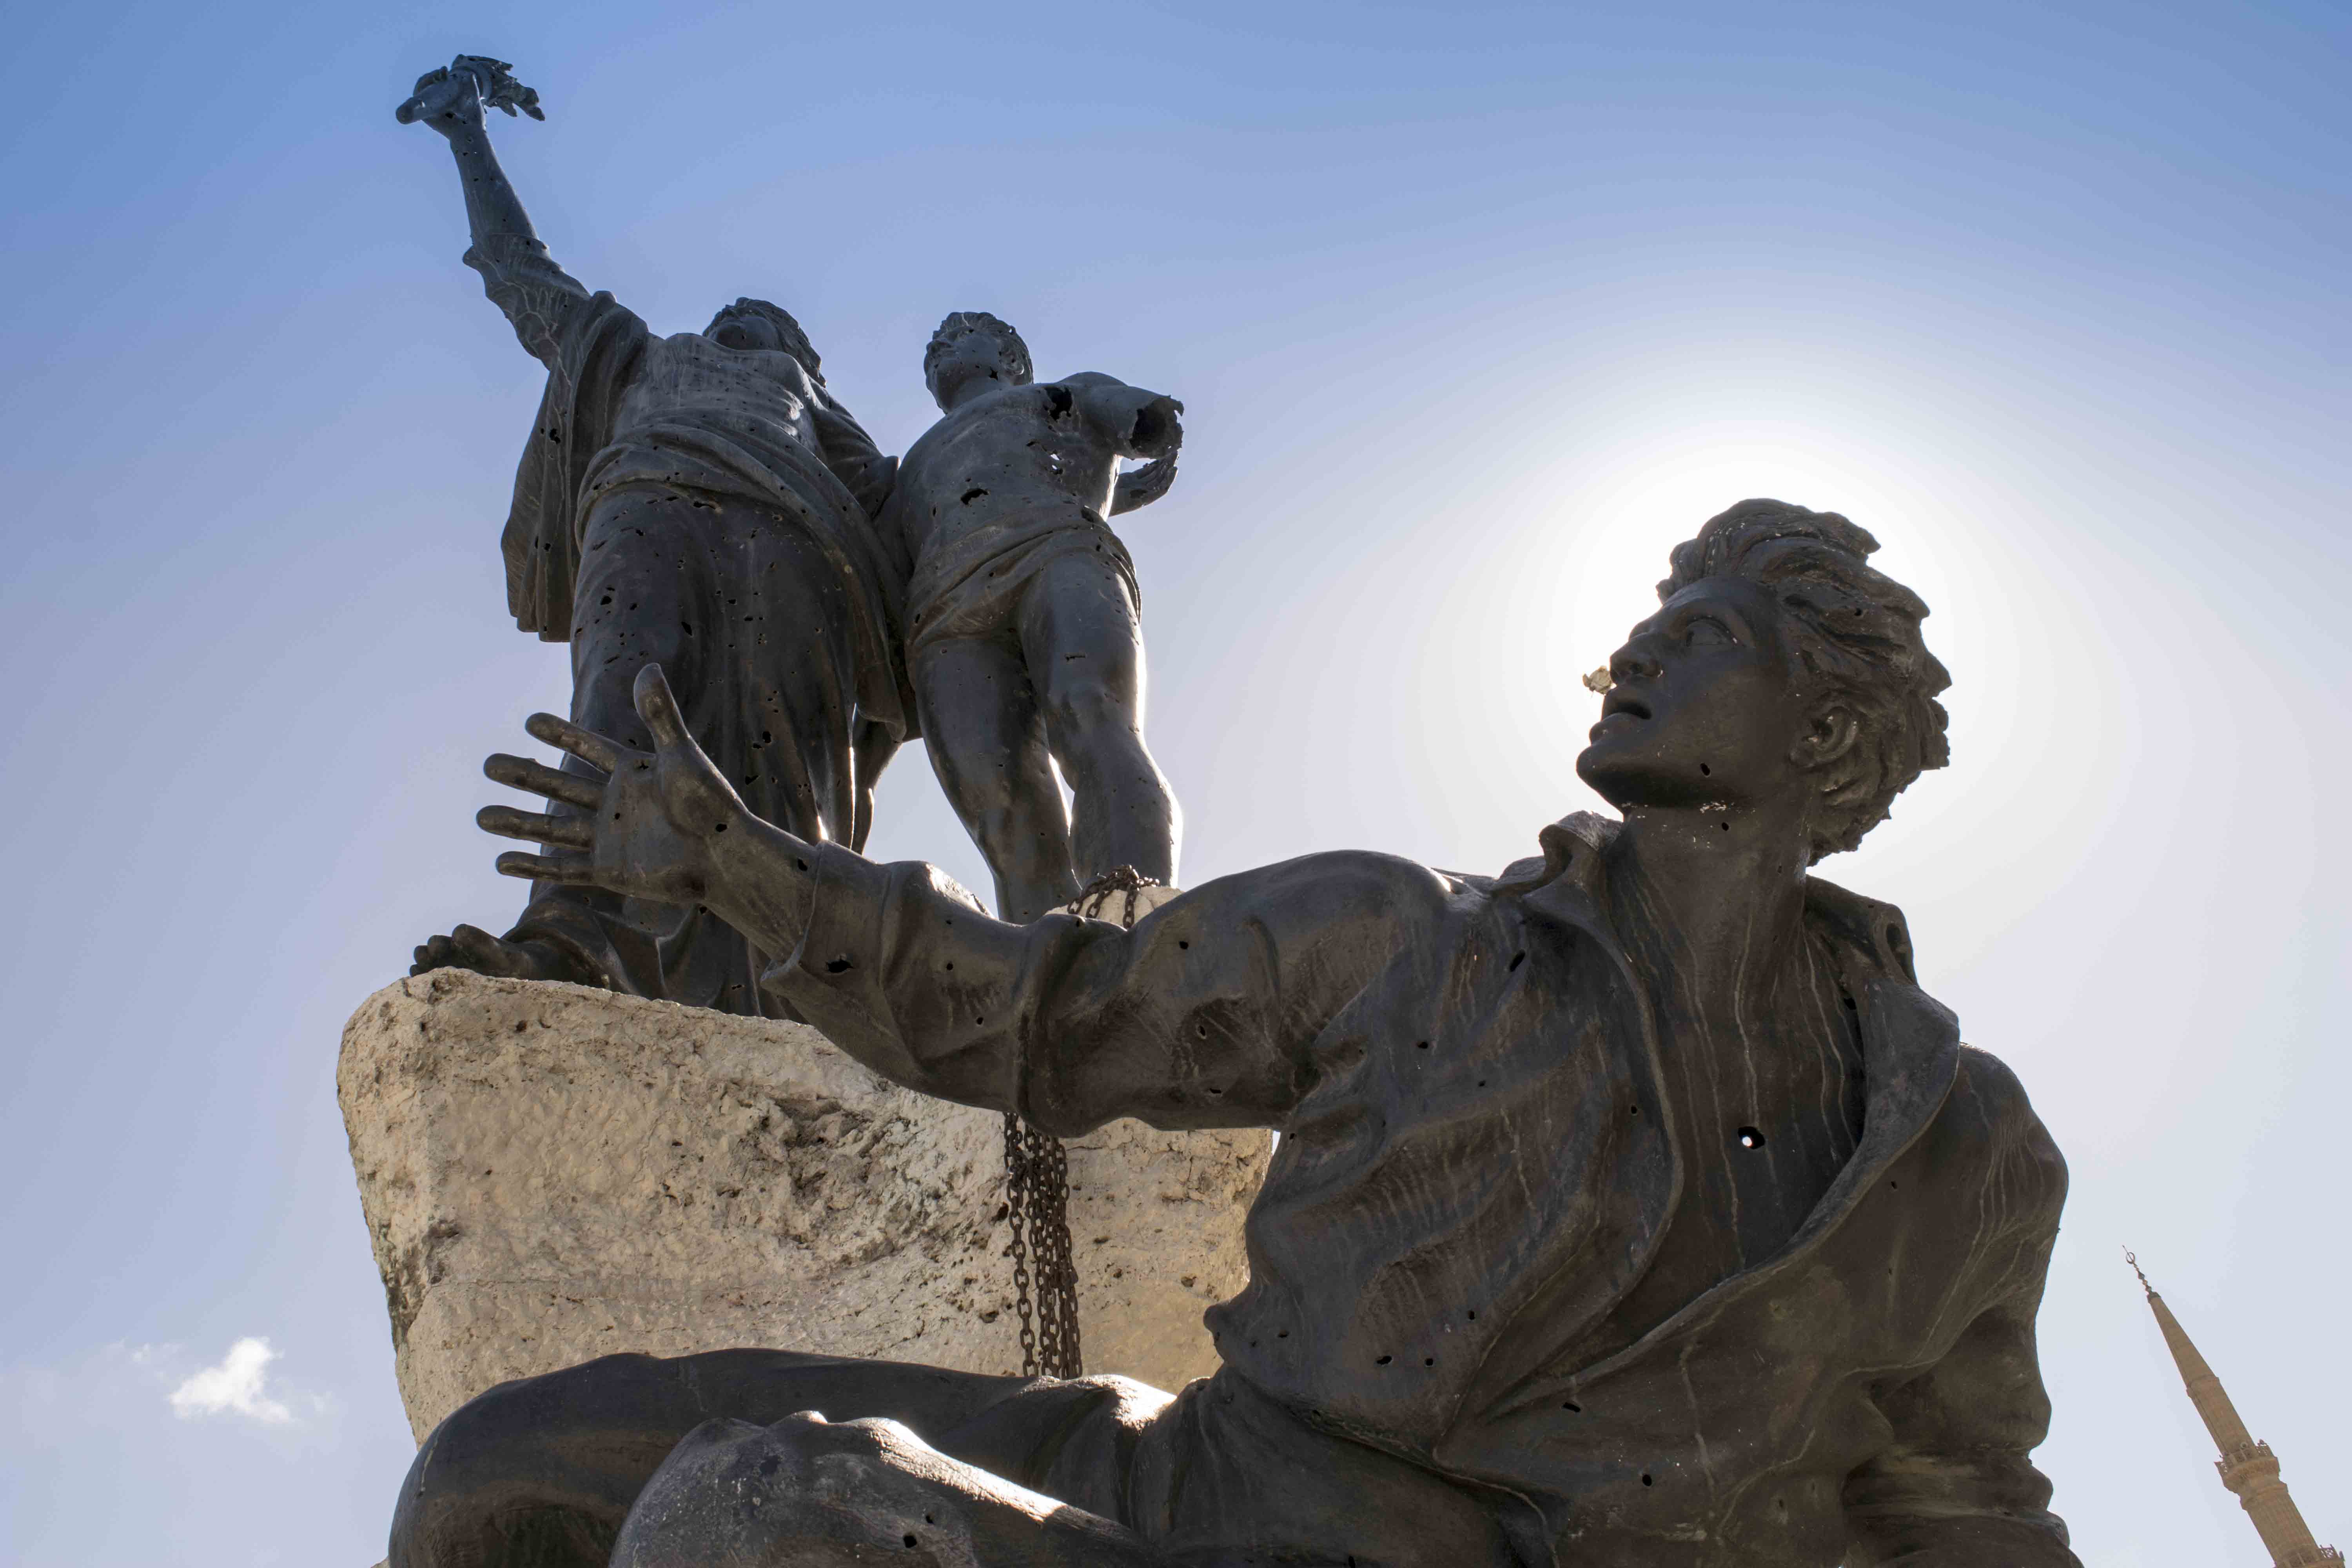 Guia do Líbano: homenagem na Praça dos Mártires em Beirute, metralhado na Guerra Civil. Guia do Líbano.